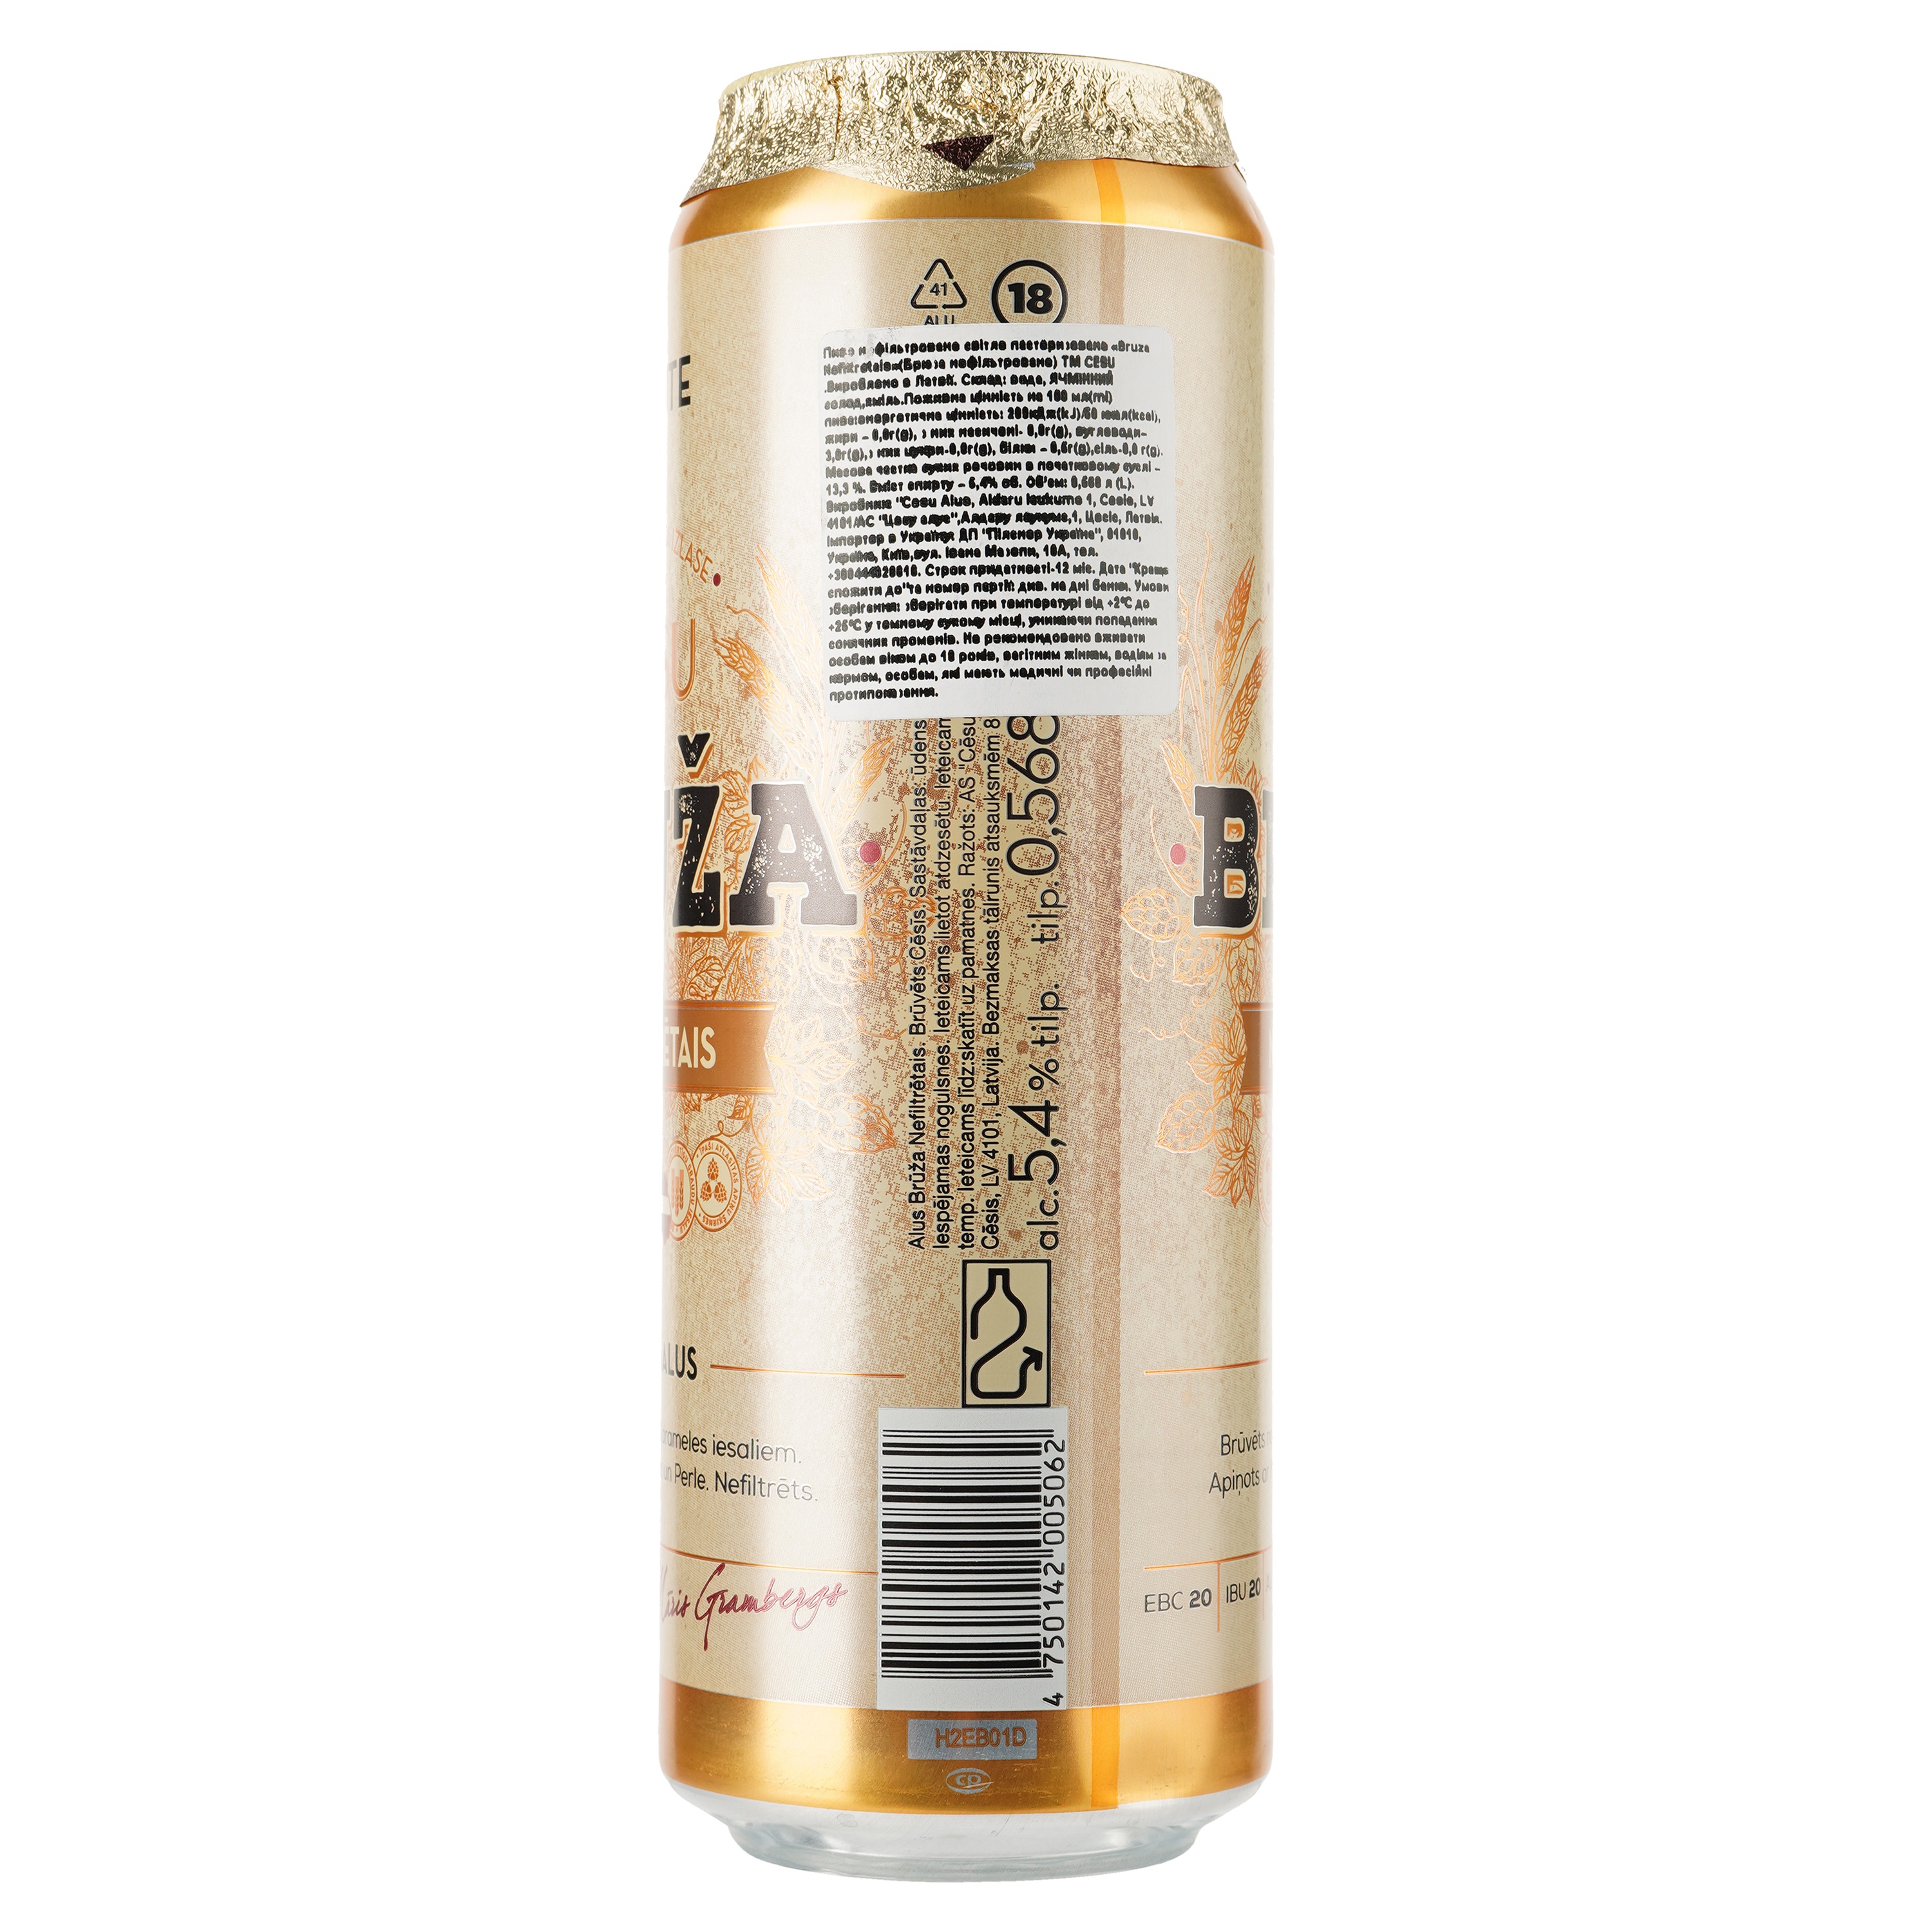 Пиво Cesu Bruza Nefiltretais, світле, нефільтроване, 5,4%, з/б, 0,568 л - фото 2